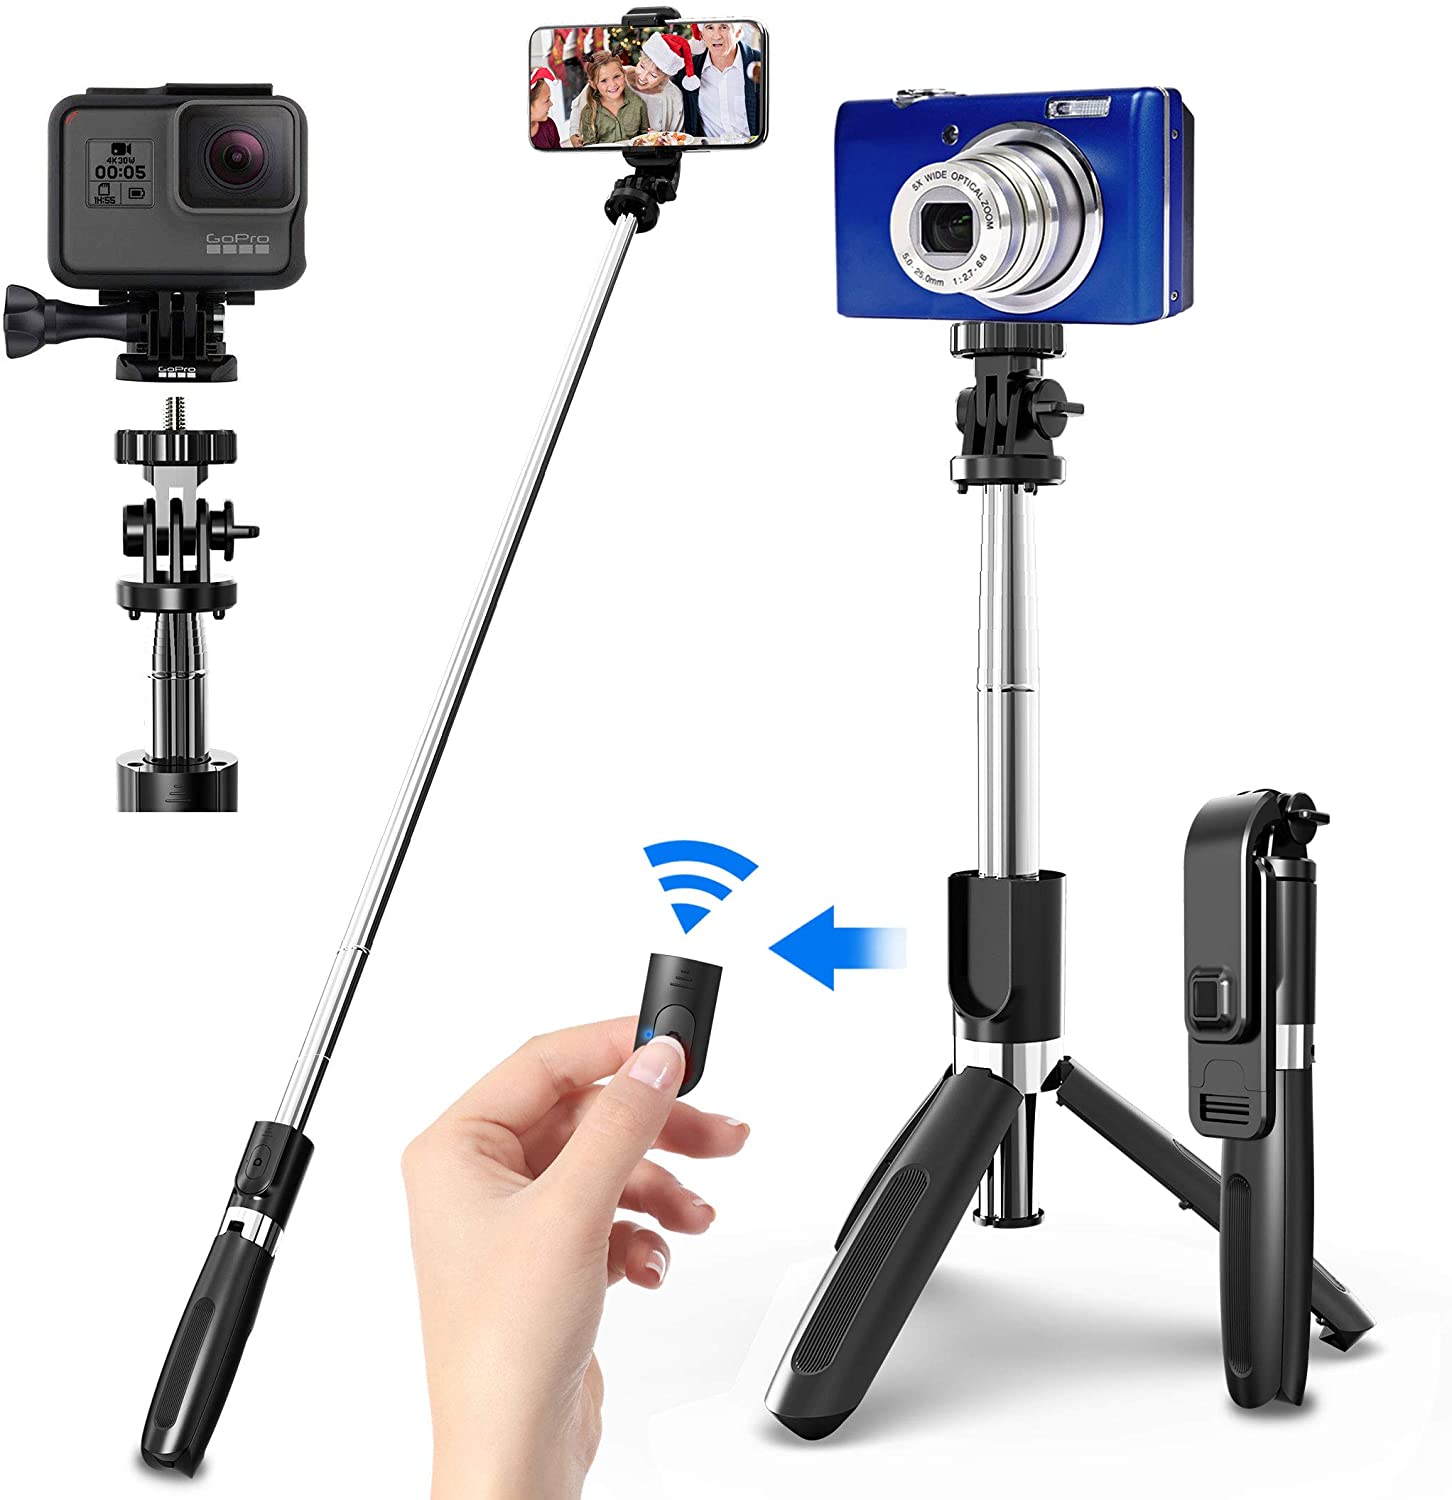 Palo de Selfie con trípode para móvil inalámbrico bluetooth